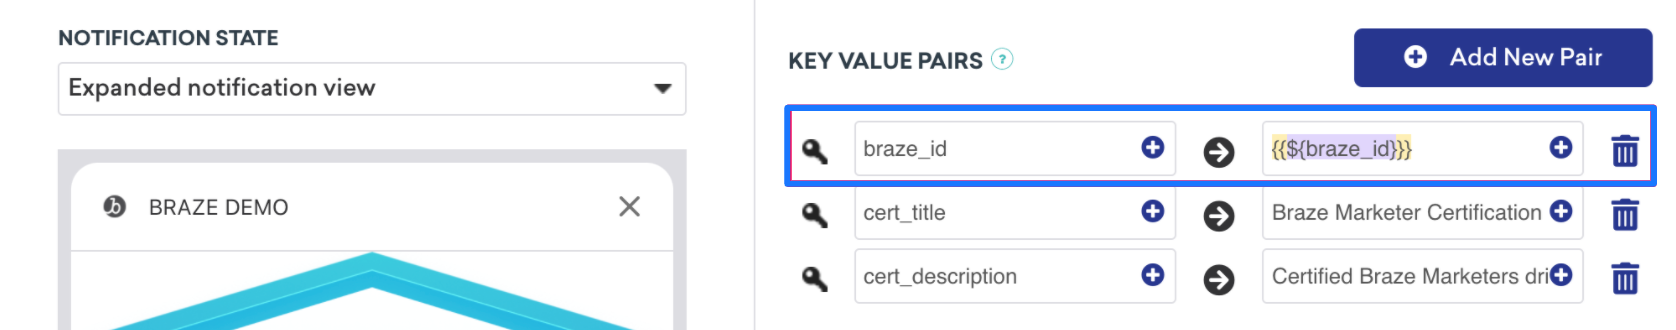 3組のキーと値のペアを含むプッシュメッセージ。1.「Braze_id」は、Braze ID を取得するための Liquid 呼び出しとして設定されます。2.「cert_title」は「Braze マーケター認証」として設定されます。3.「Cert_description」は、「認定 Braze マーケタードライブ...」として設定されます